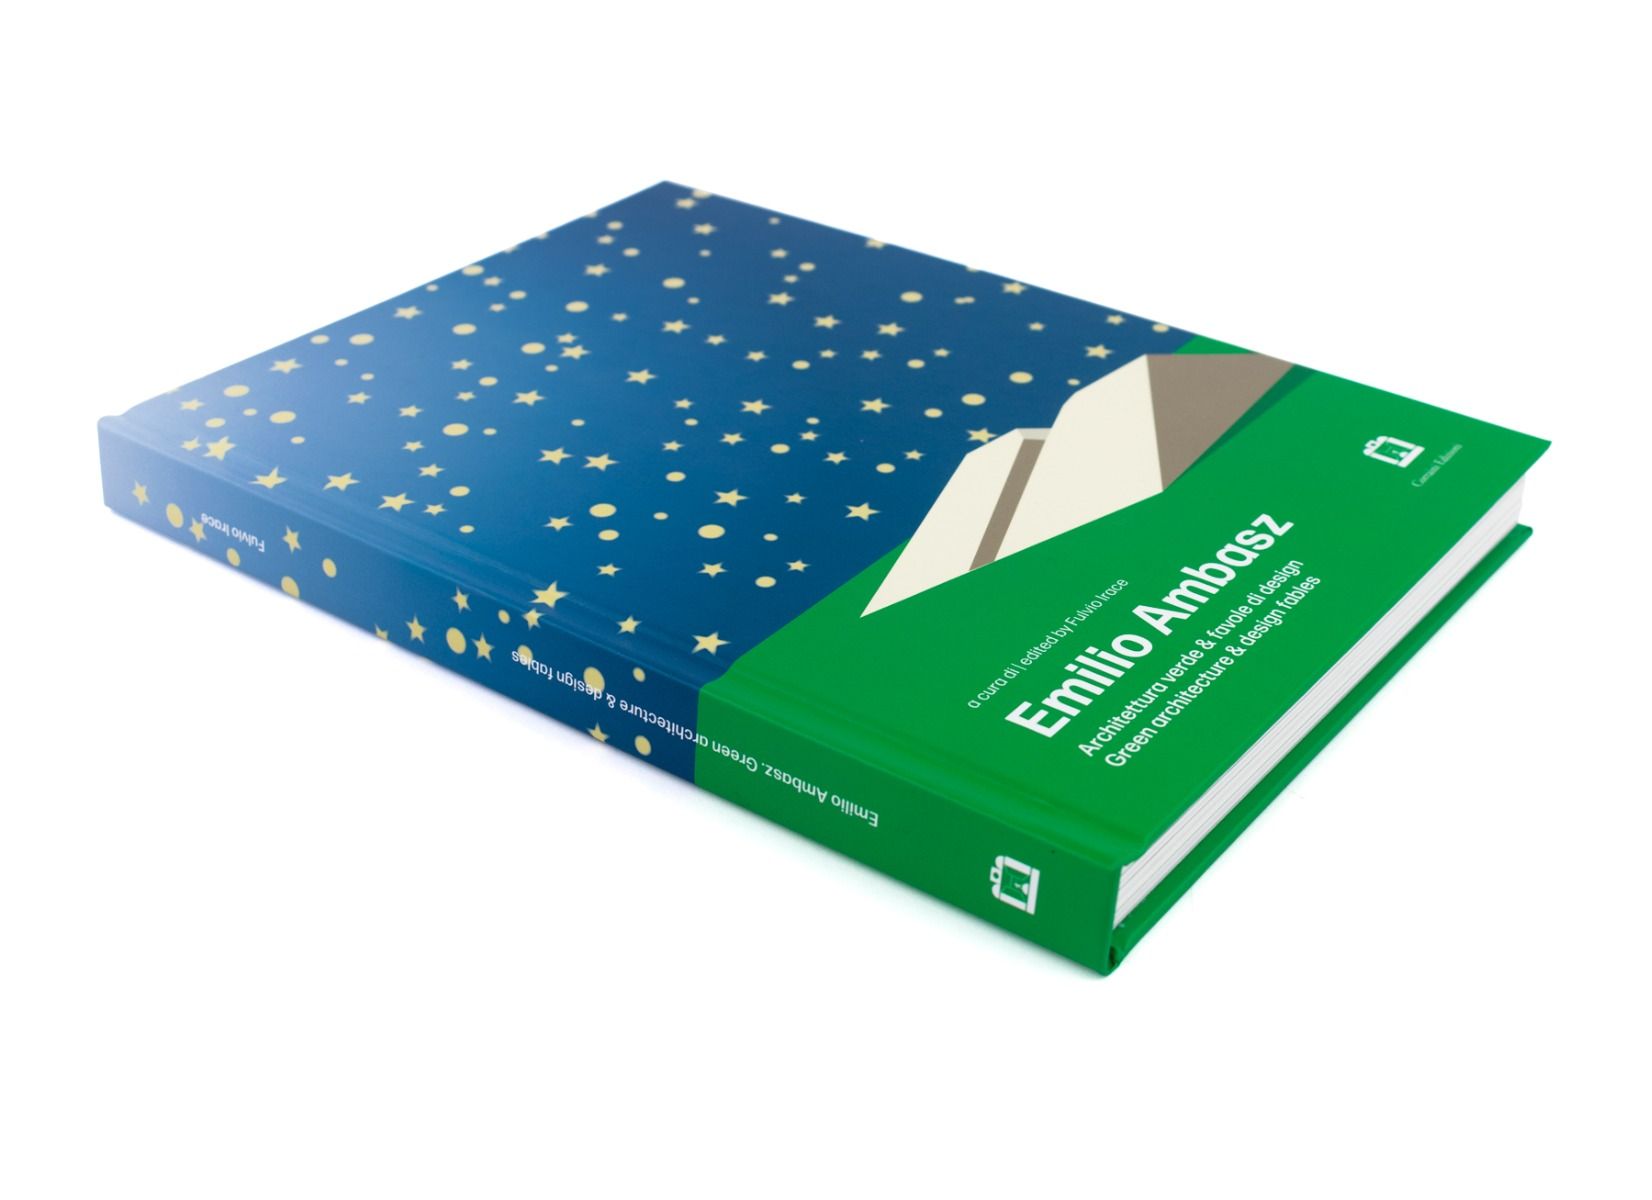 Emilio Ambasz - Architettura verde & favole di design - Green architecture & design tales